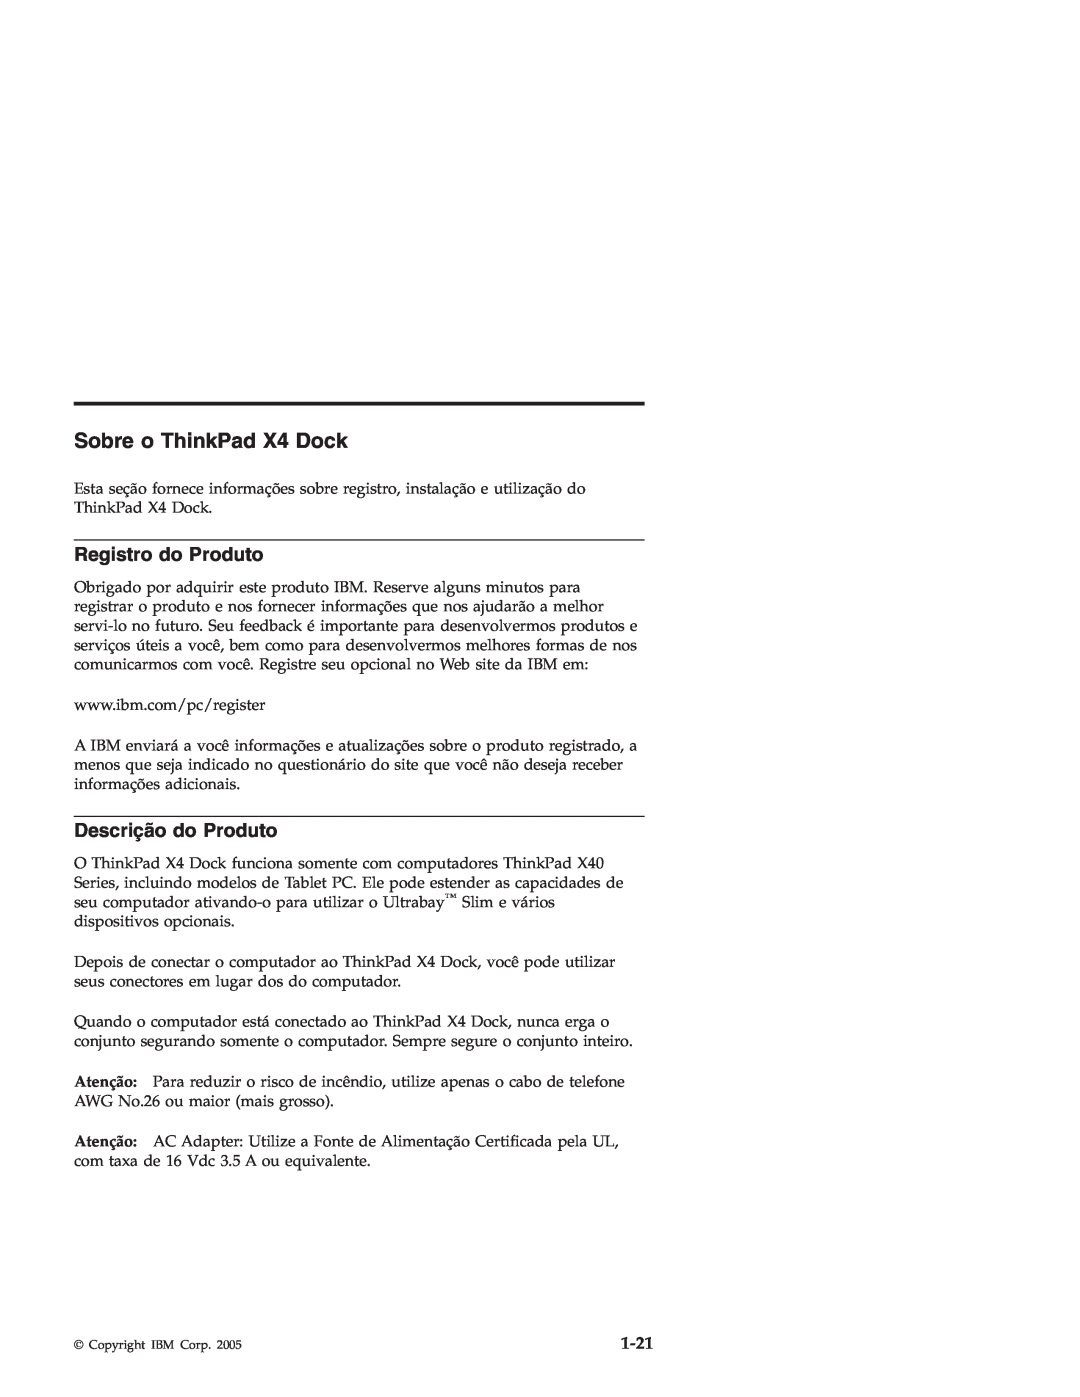 IBM manual Sobre o ThinkPad X4 Dock, Registro do Produto, Descrição do Produto, 1-21 